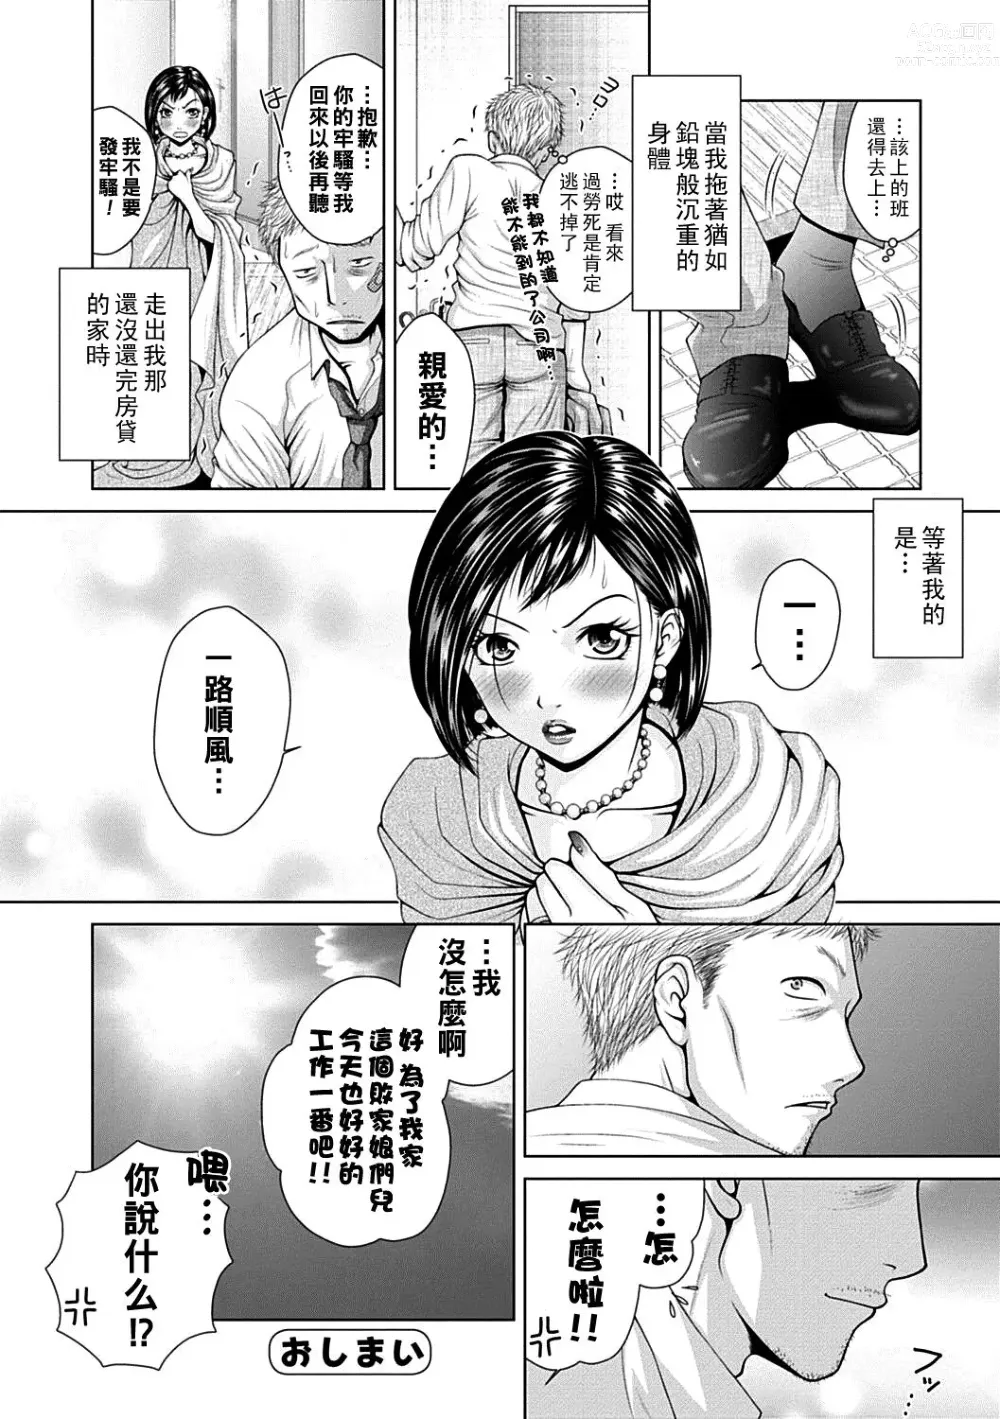 Page 16 of manga Salaryman  Elegy